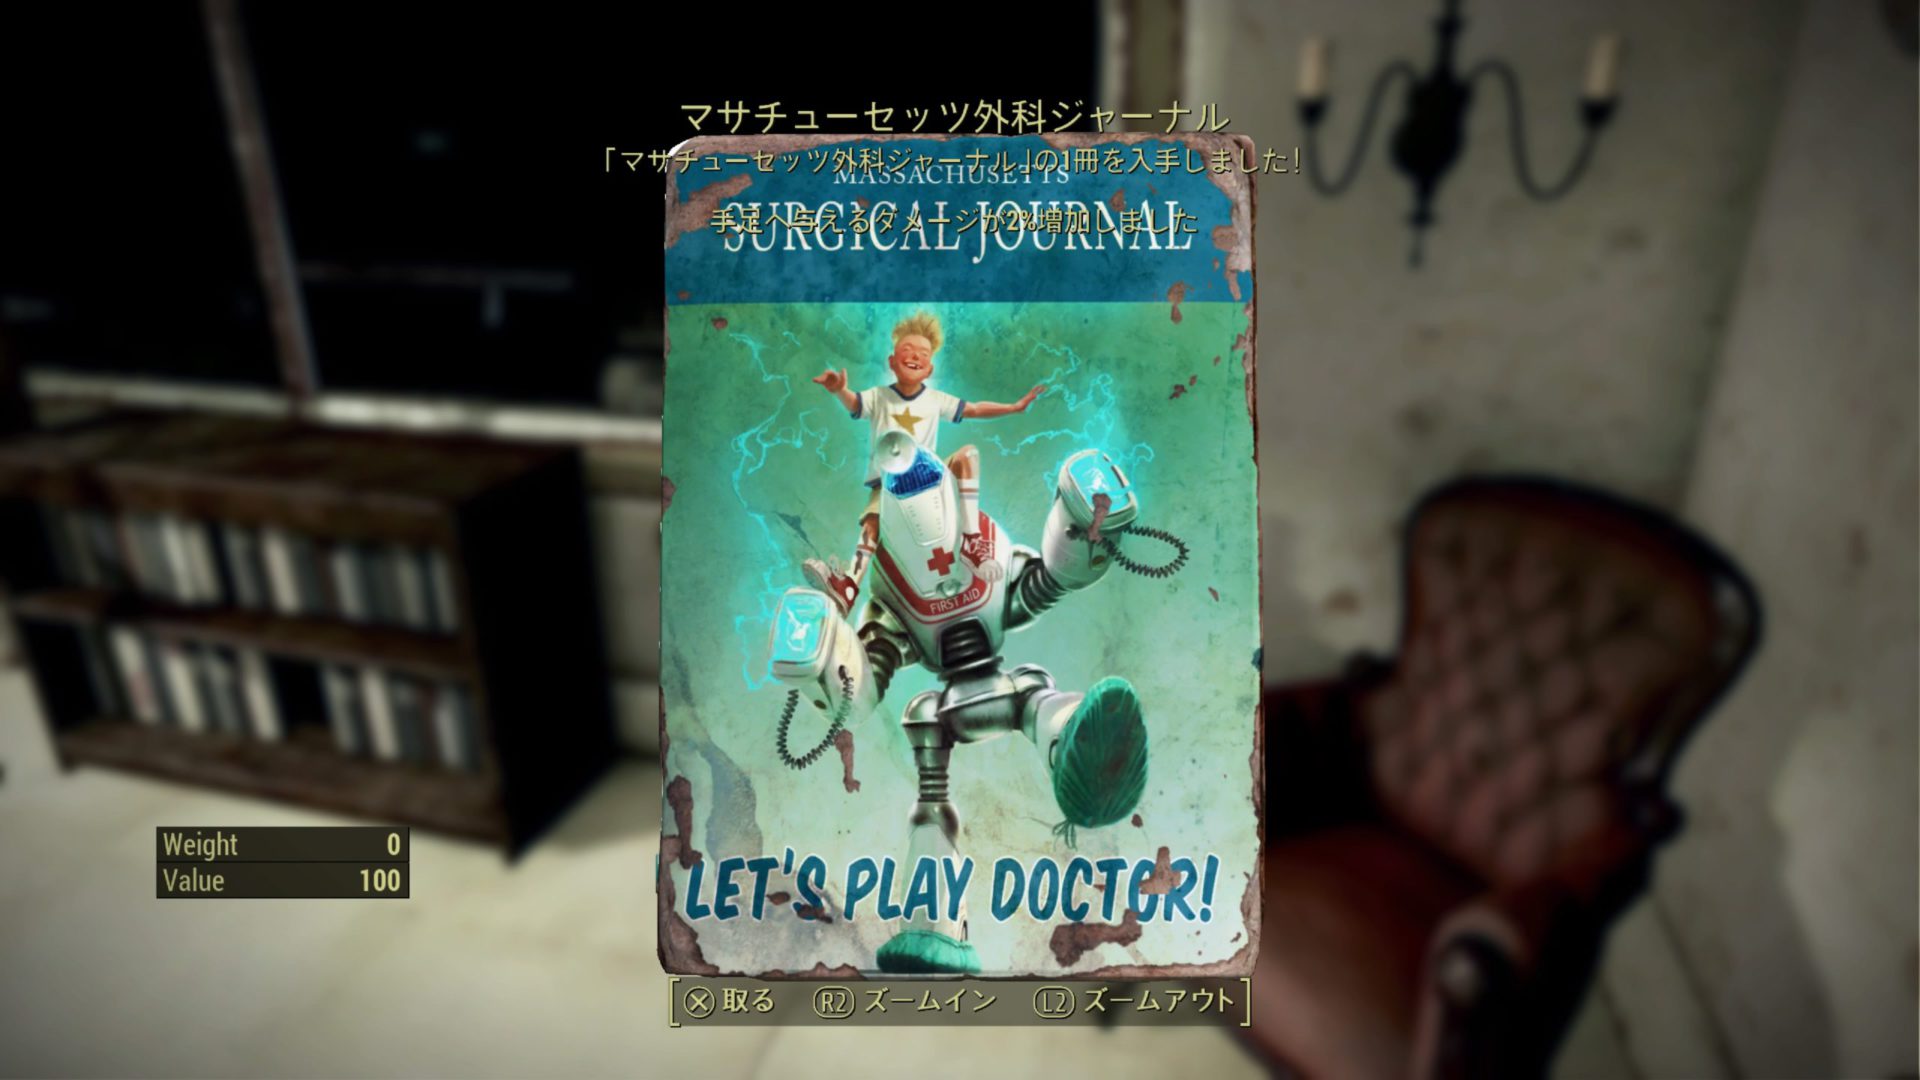 マサチューセッツ外科ジャーナル Let's Play Doctor!